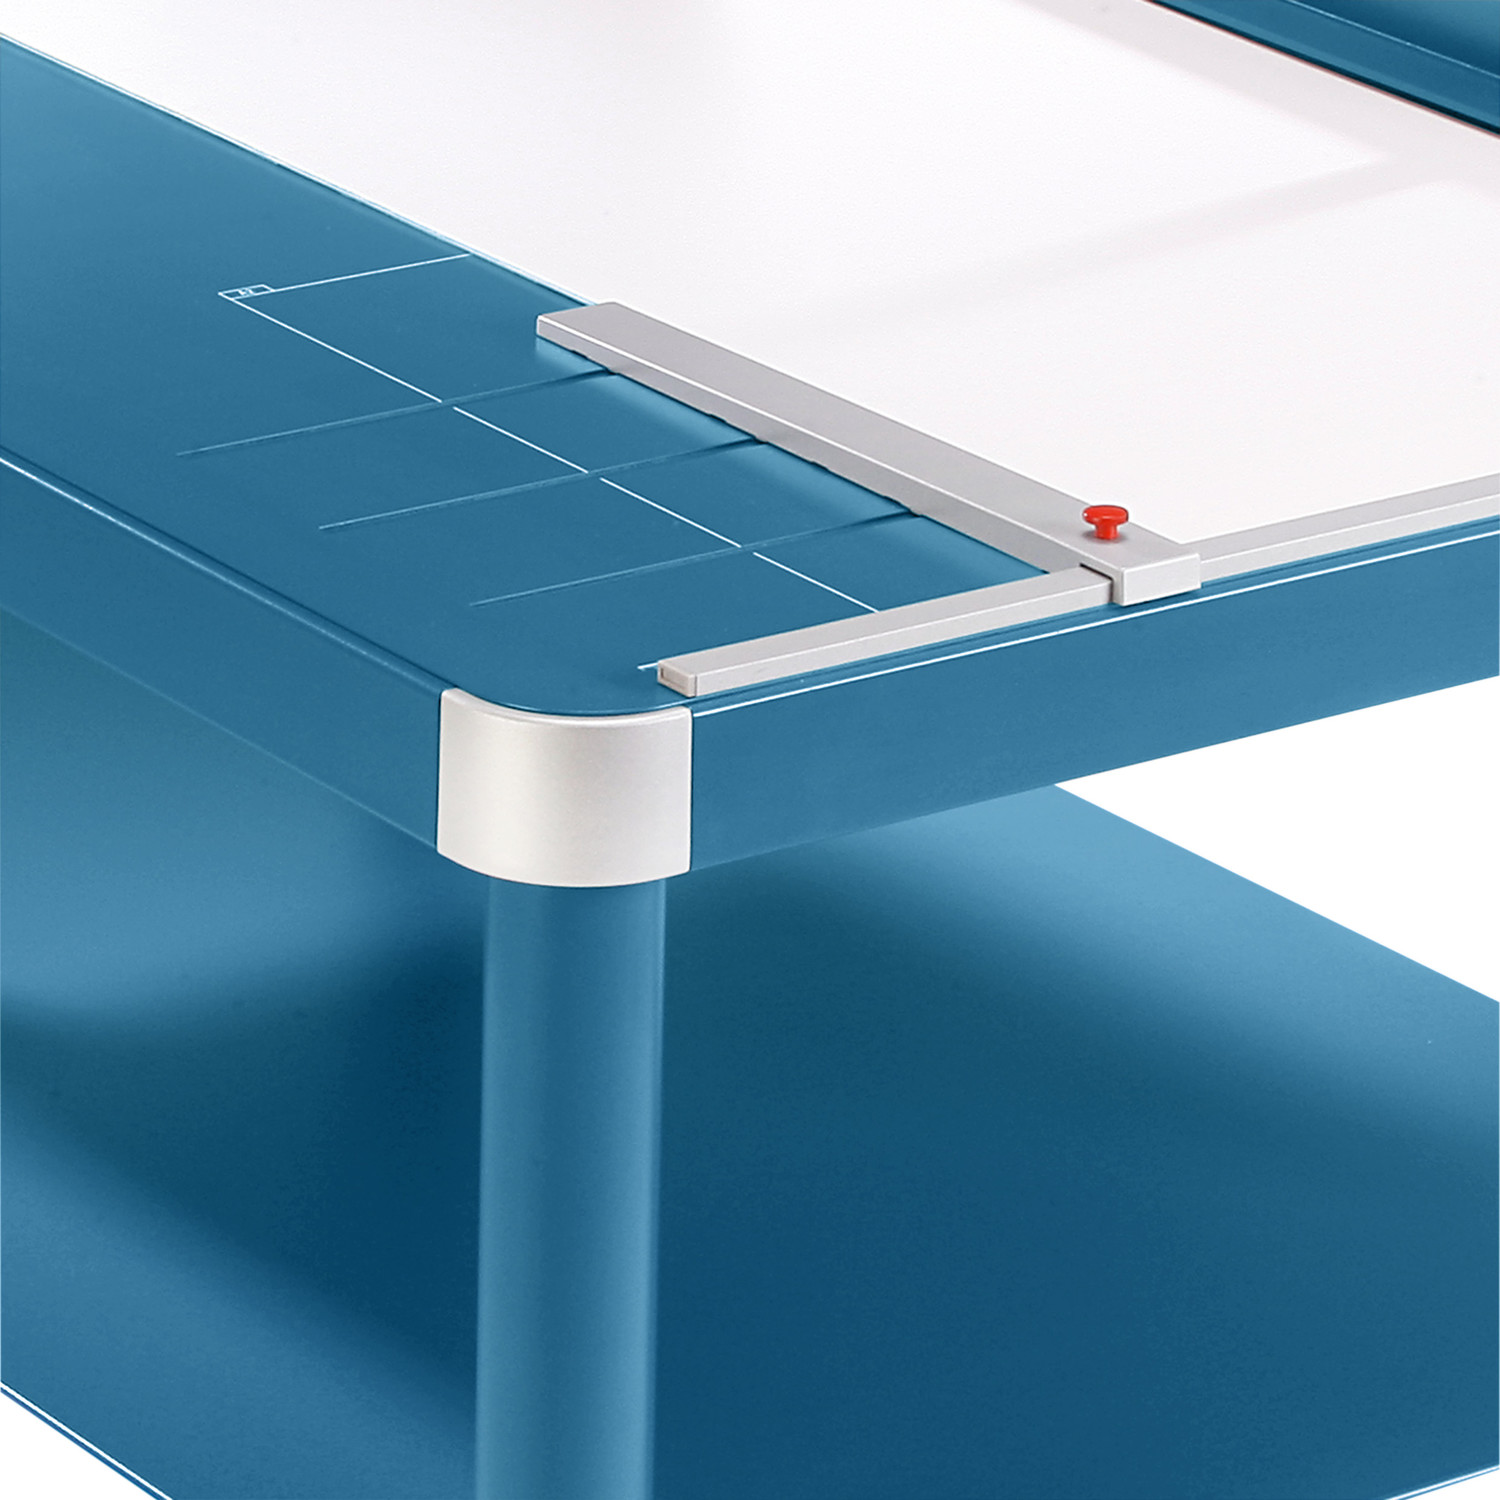 Nastavitelný zadní kovový doraz k rychlému formátování, použitelný na obou úhlových příložnících a předním stole